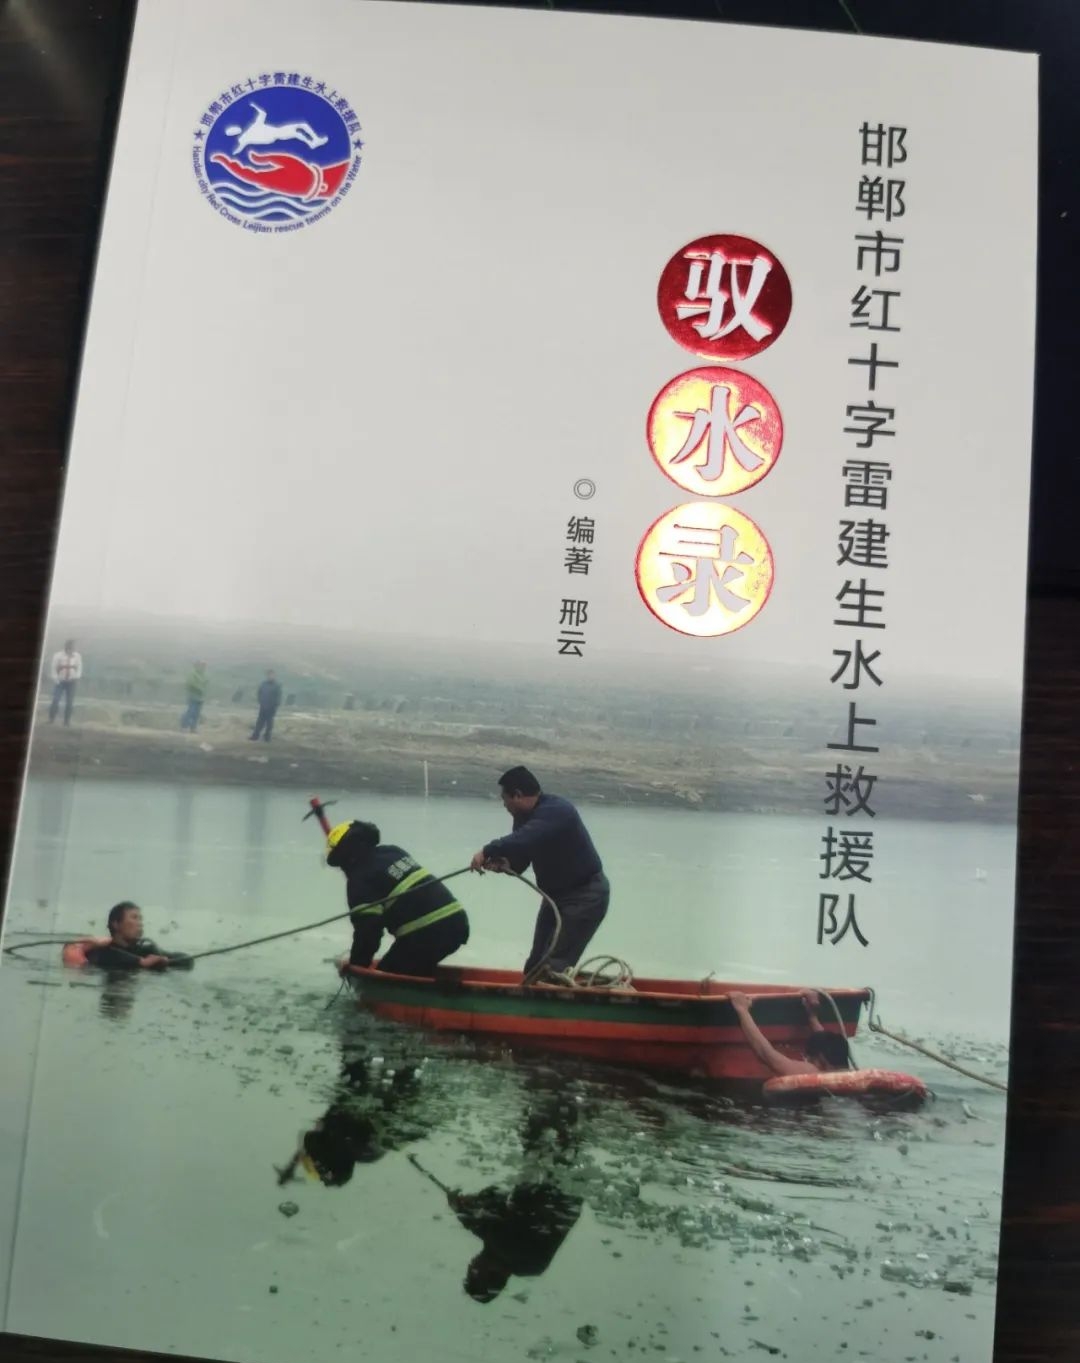 邯郸市红十字雷建生水上救援队 | 驭水录①